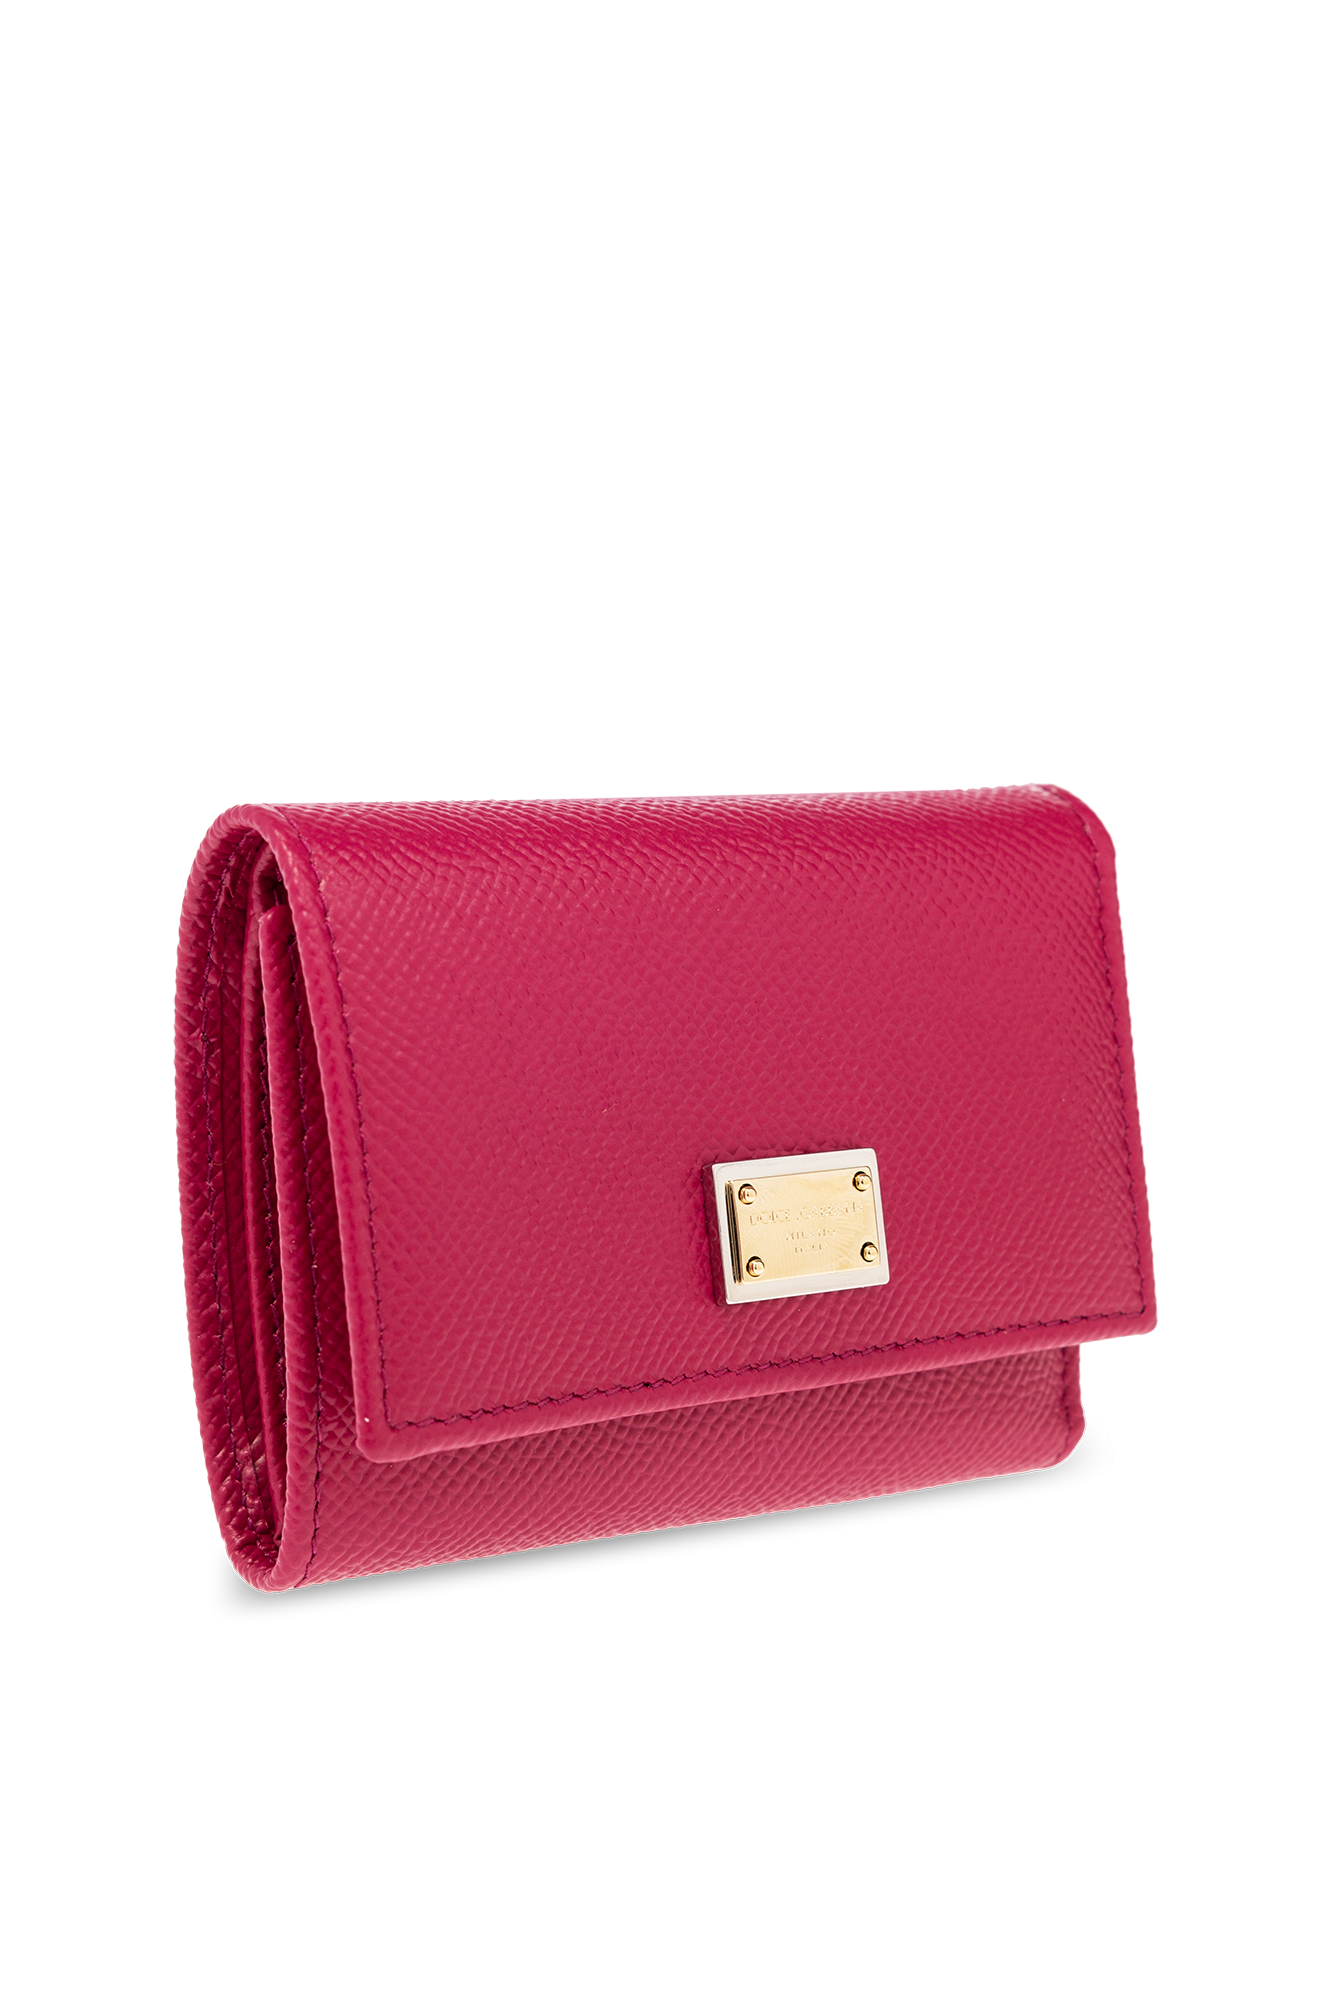 SchaferandweinerShops TW - dolce gabbana floral cotton maxi skirt - Pink  Wallet with logo Dolce u0026 Gabbana